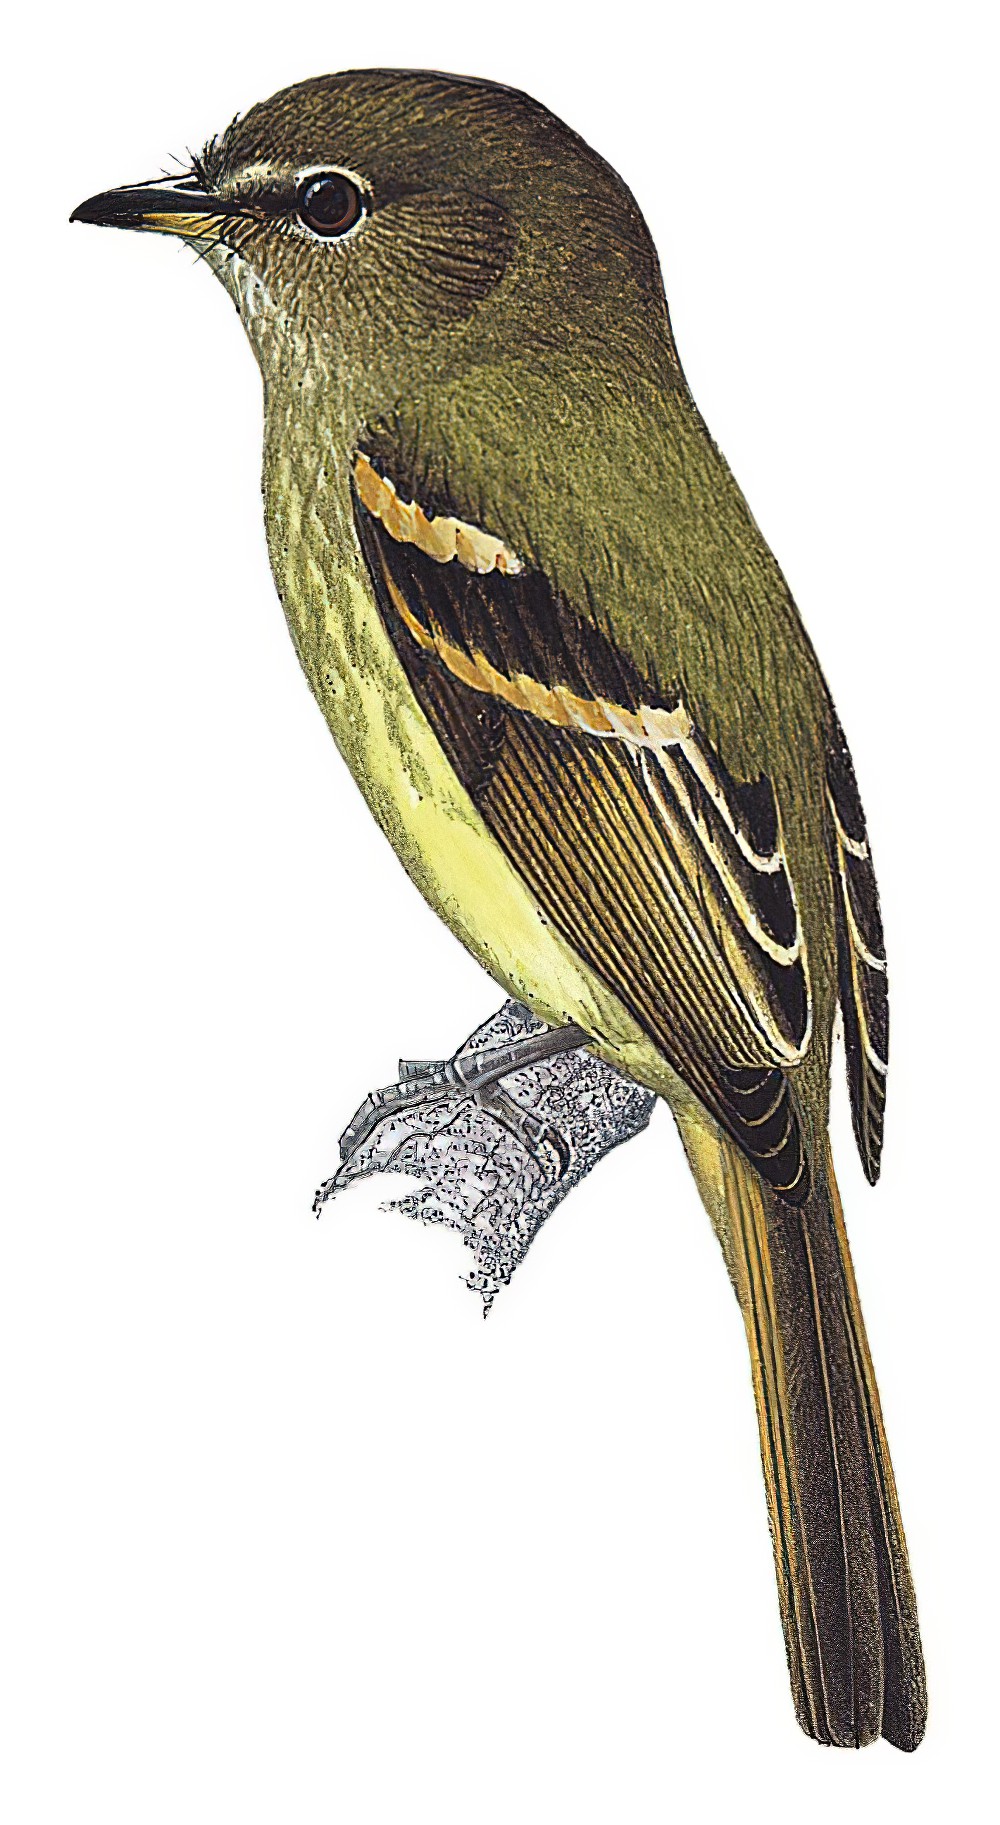 Dusky-tailed Flatbill / Ramphotrigon fuscicauda